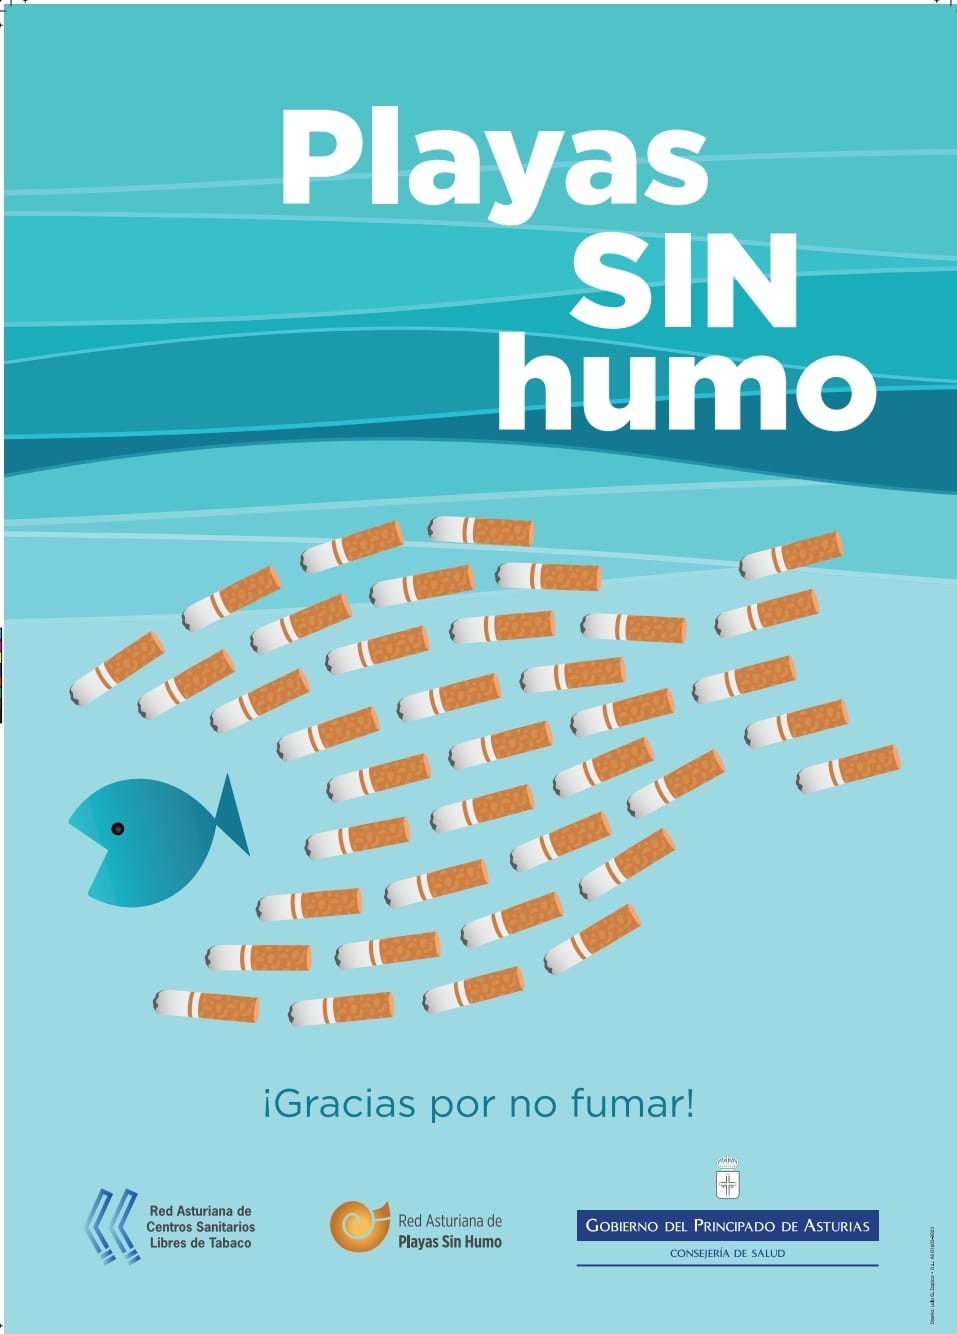 Cartel oficial de las Playas sin humo de Asturias